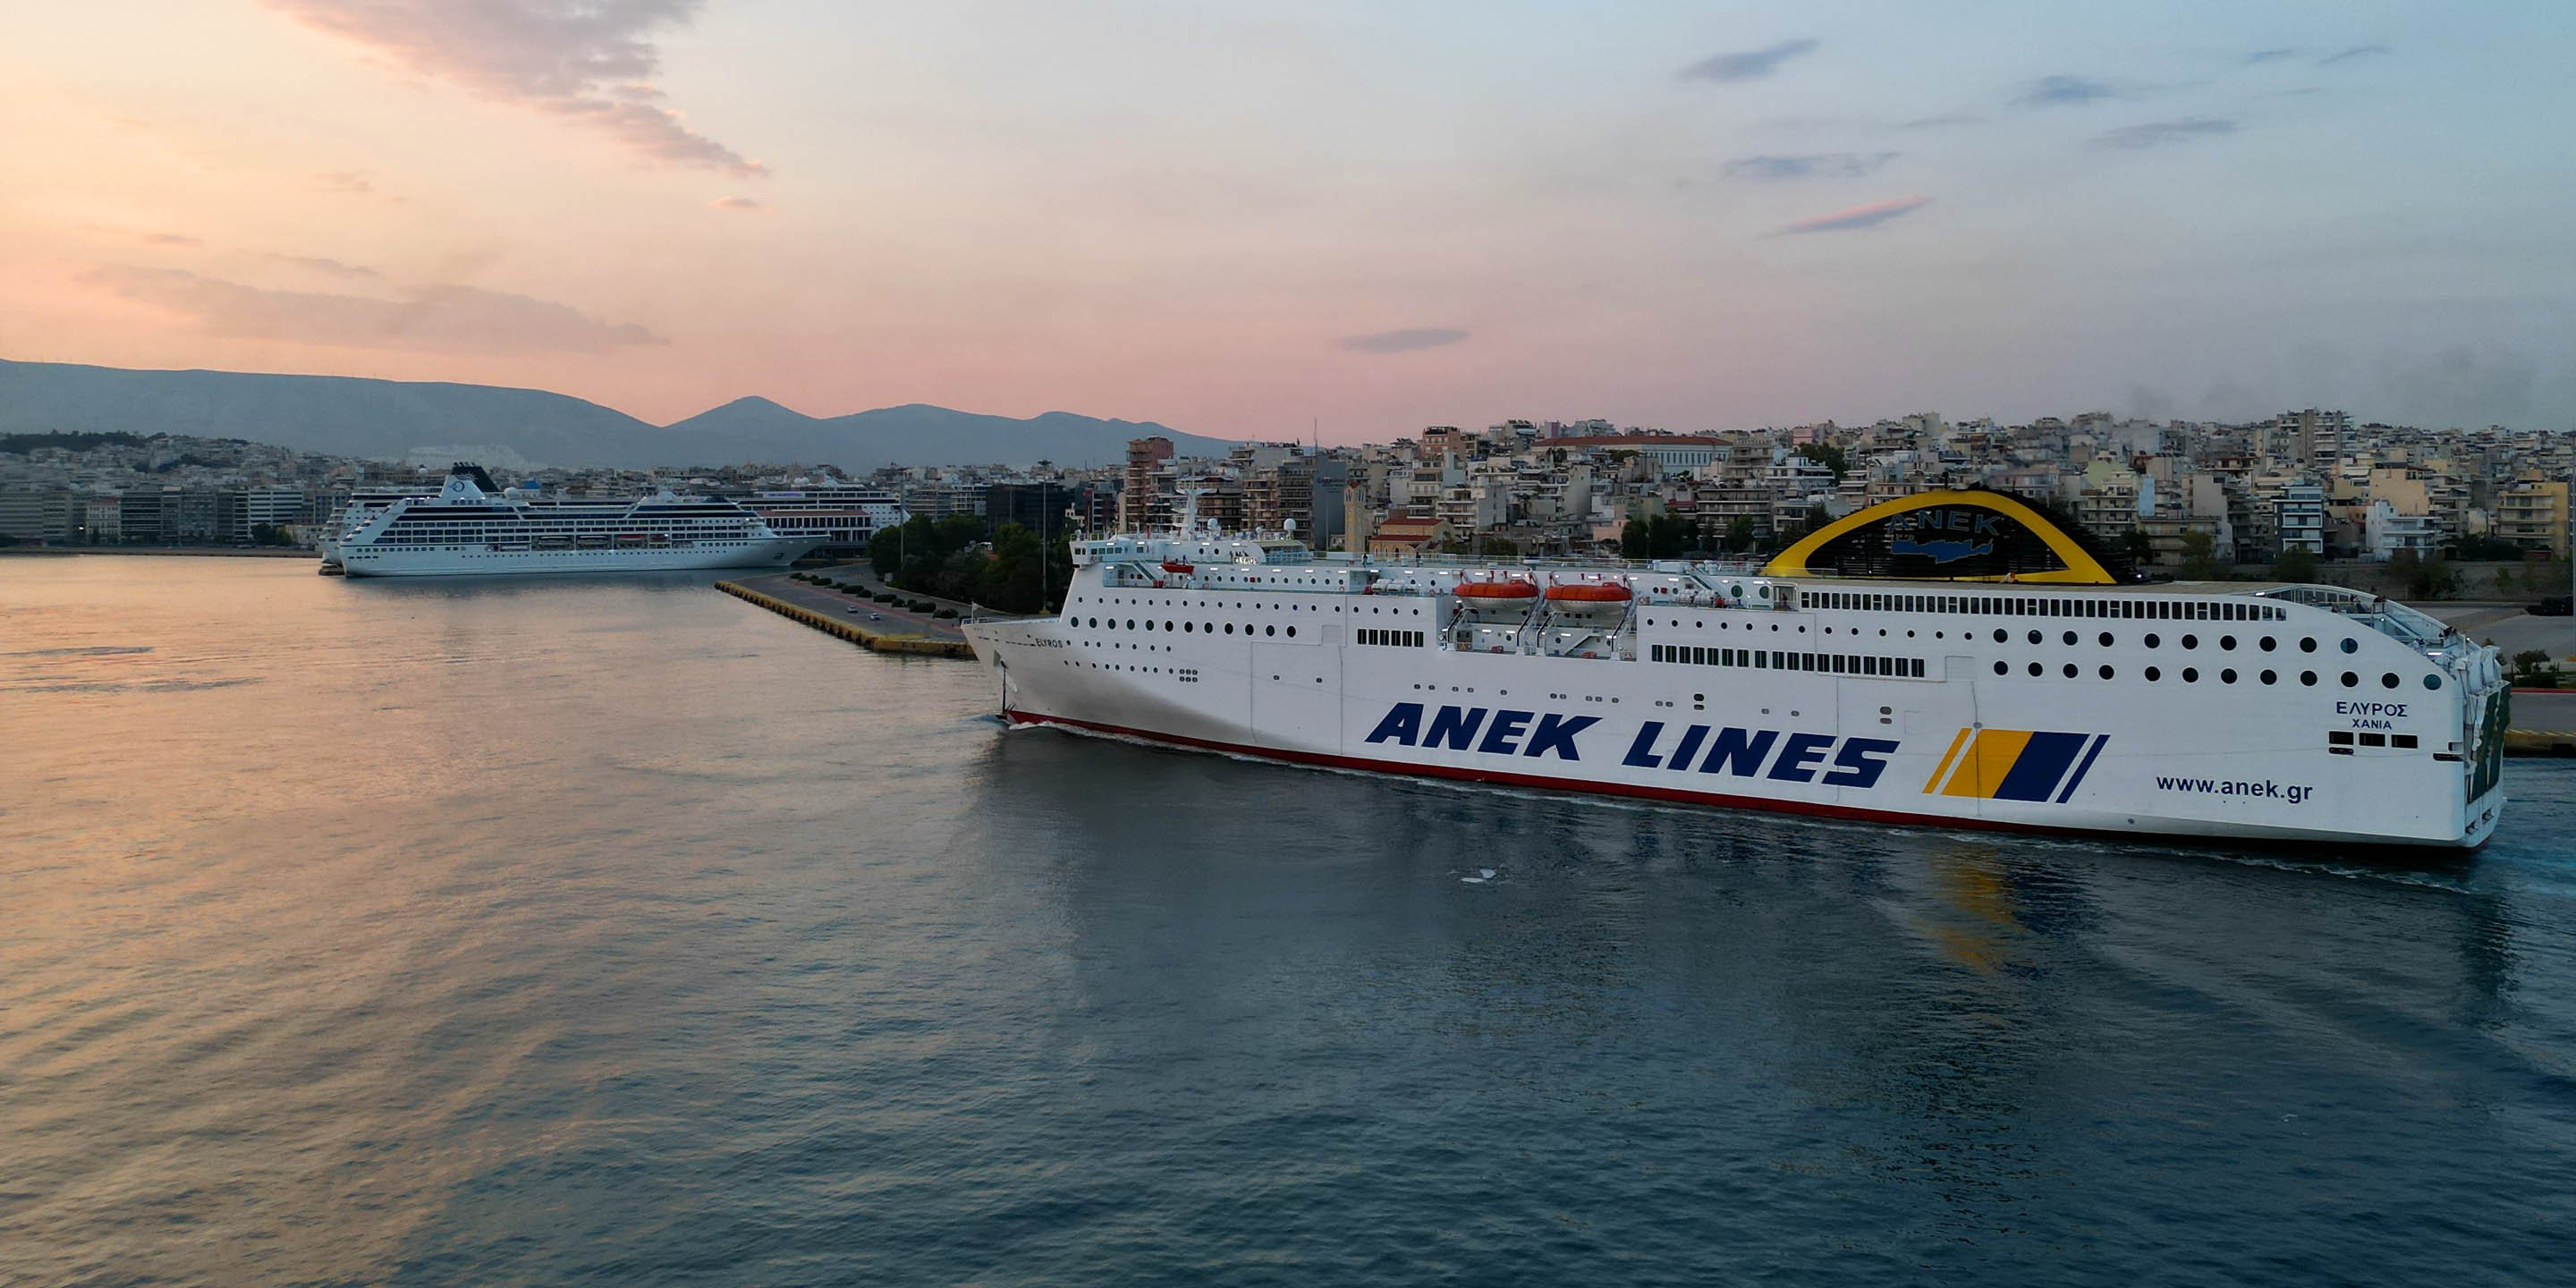 Die konventionelle Fähre Elyros im Hafen von Piräus, bereit zur Abfahrt nach Chania auf Kreta